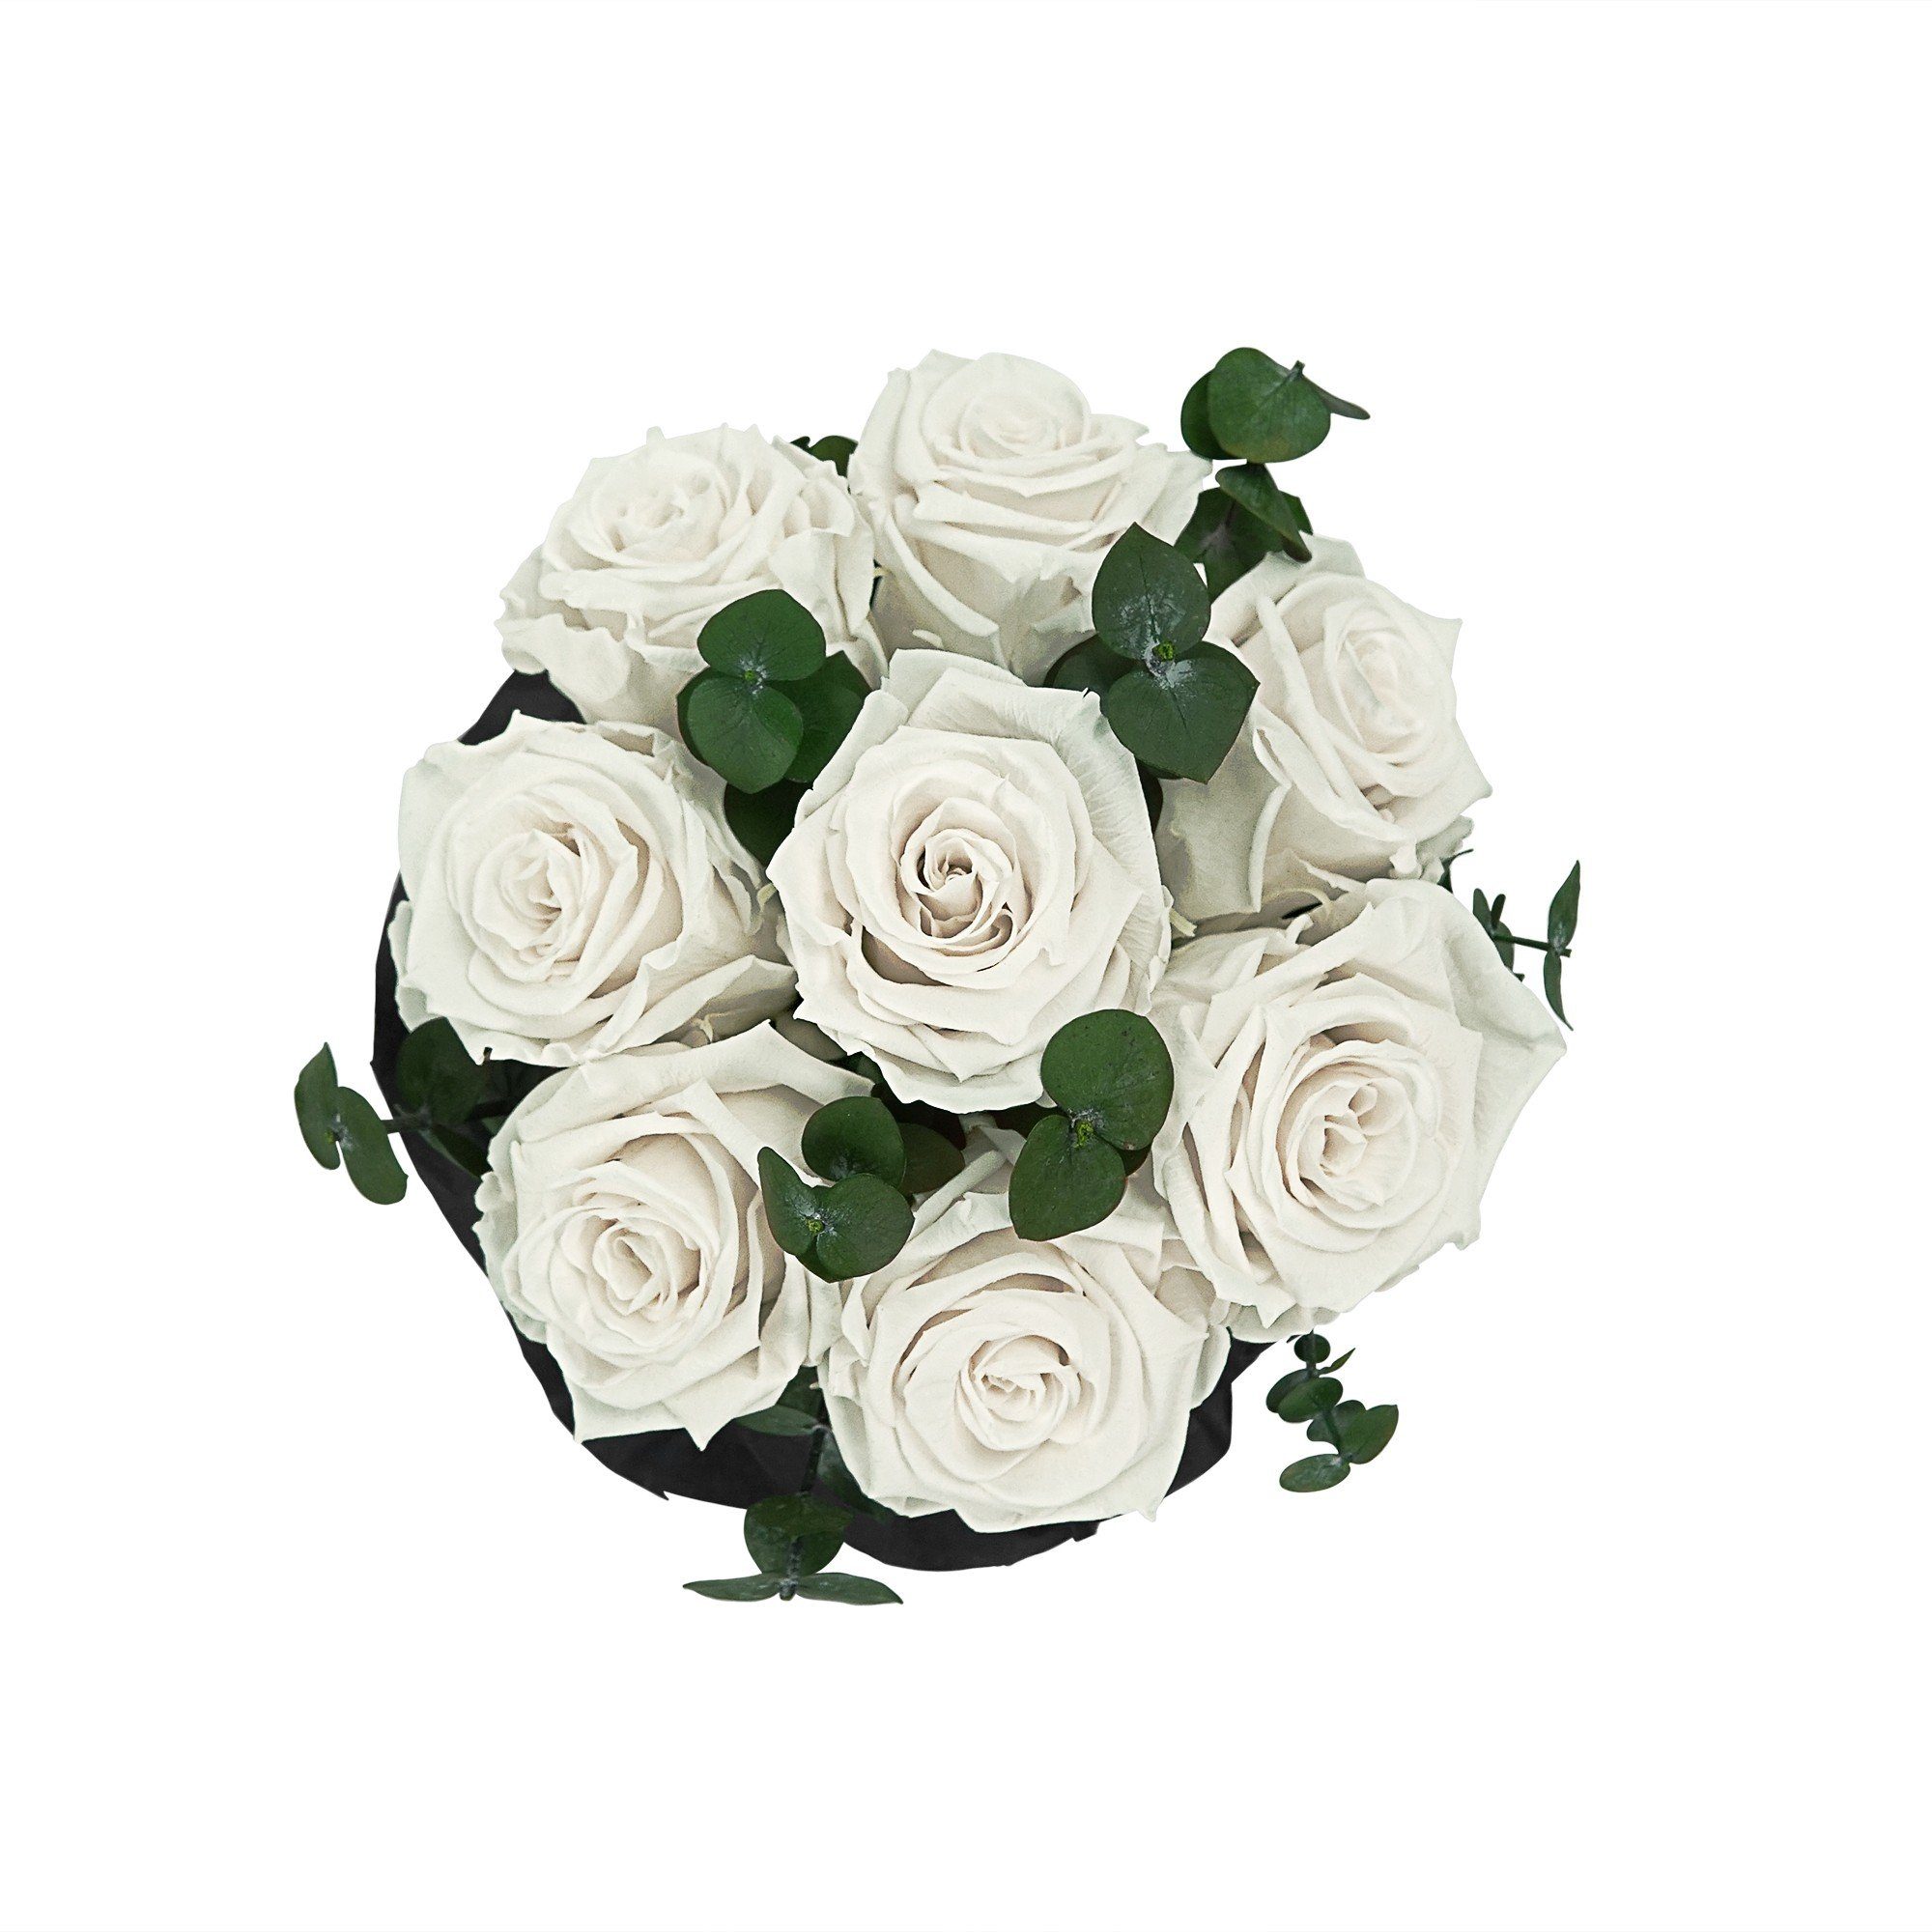 Kunstblume Rosenbox konservierte Richter I Holy Infinity Raul Echte, Rose, duftende I Jahre mit 3 7-9 by haltbar I Blumen Rosen Bouquet Weiß Flowers